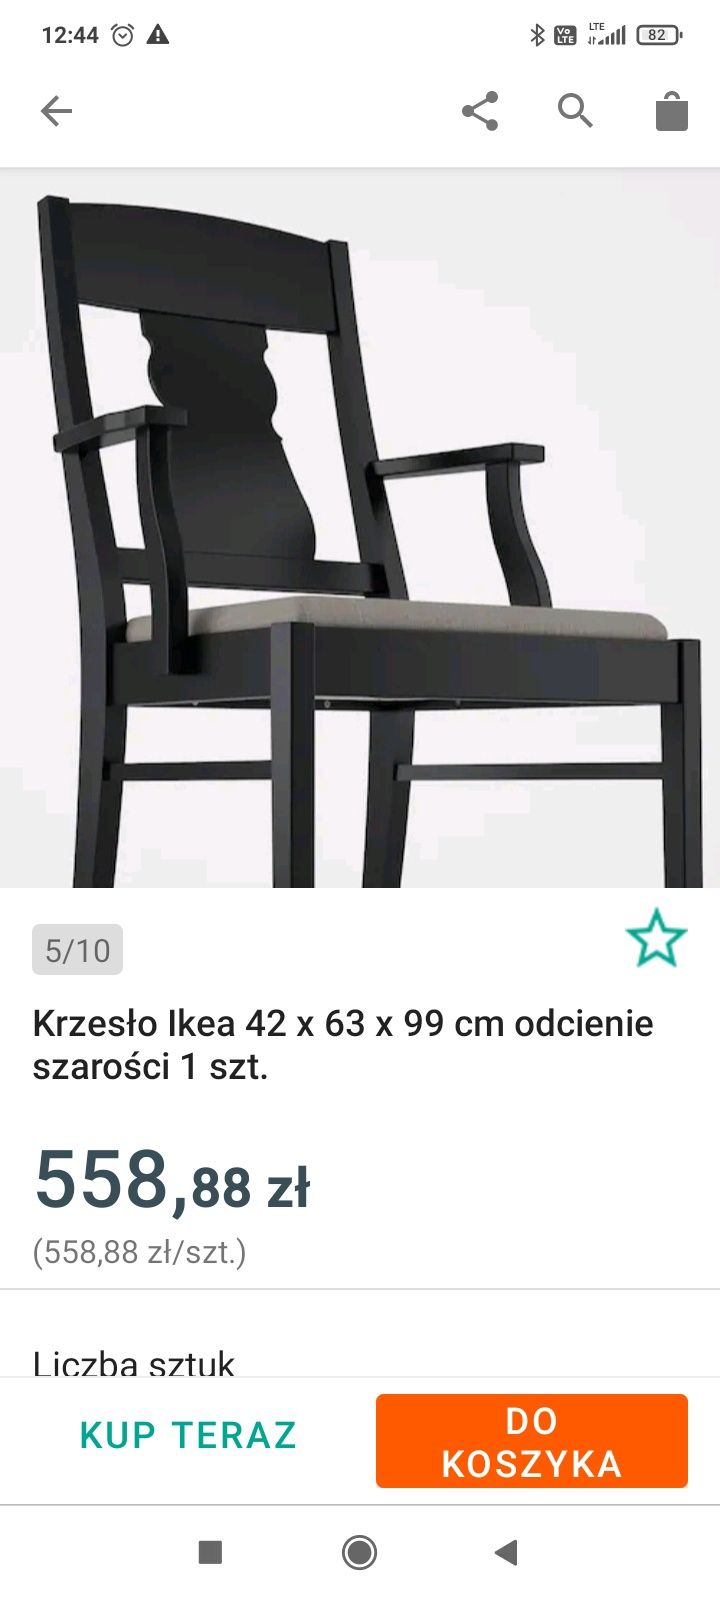 Nowy stół Ikea plus 4 krzesła